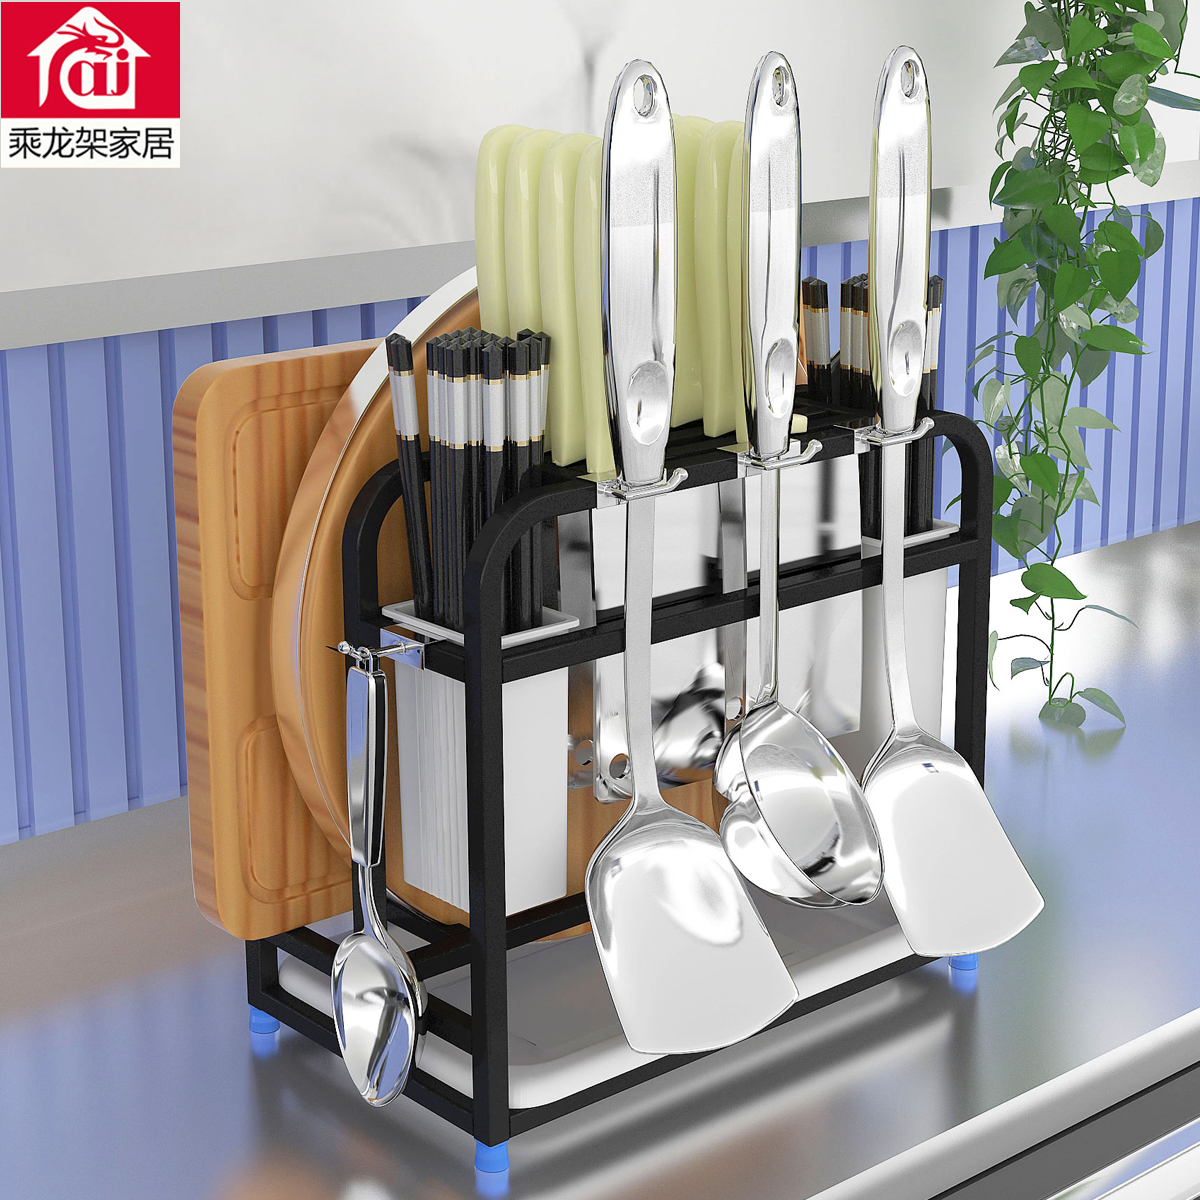 多功能不锈钢刀架厨房置物架菜刀砧板架筷子筒刀具用品整理收纳架